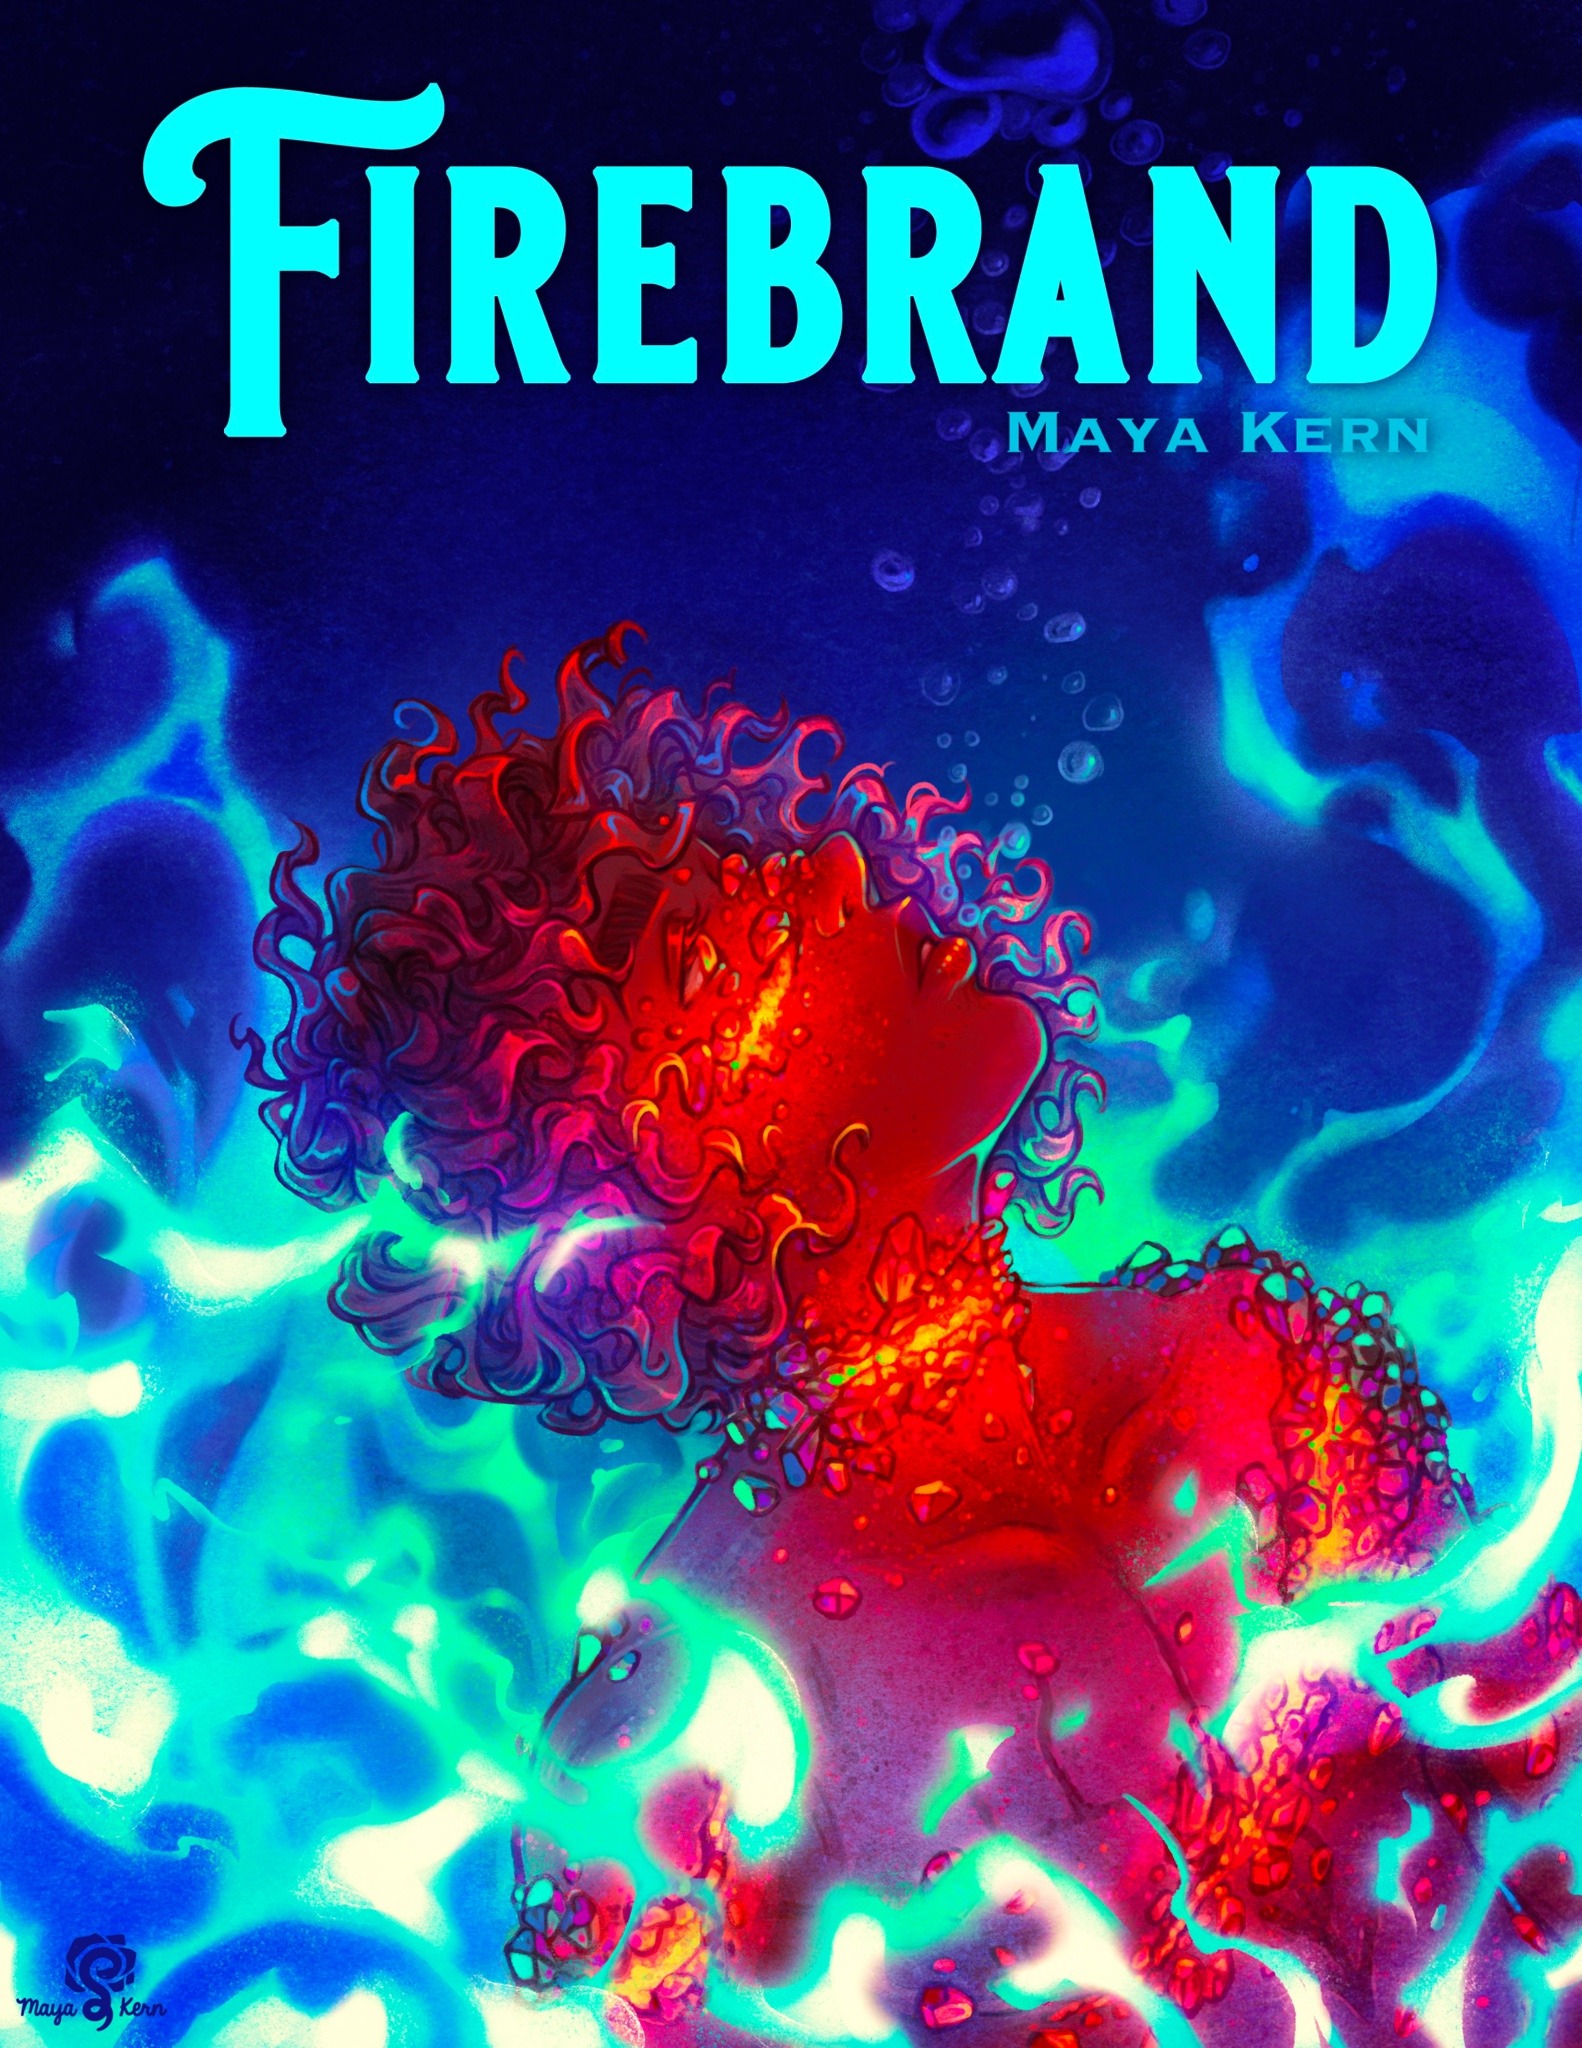 Firebrand by Maya Kern